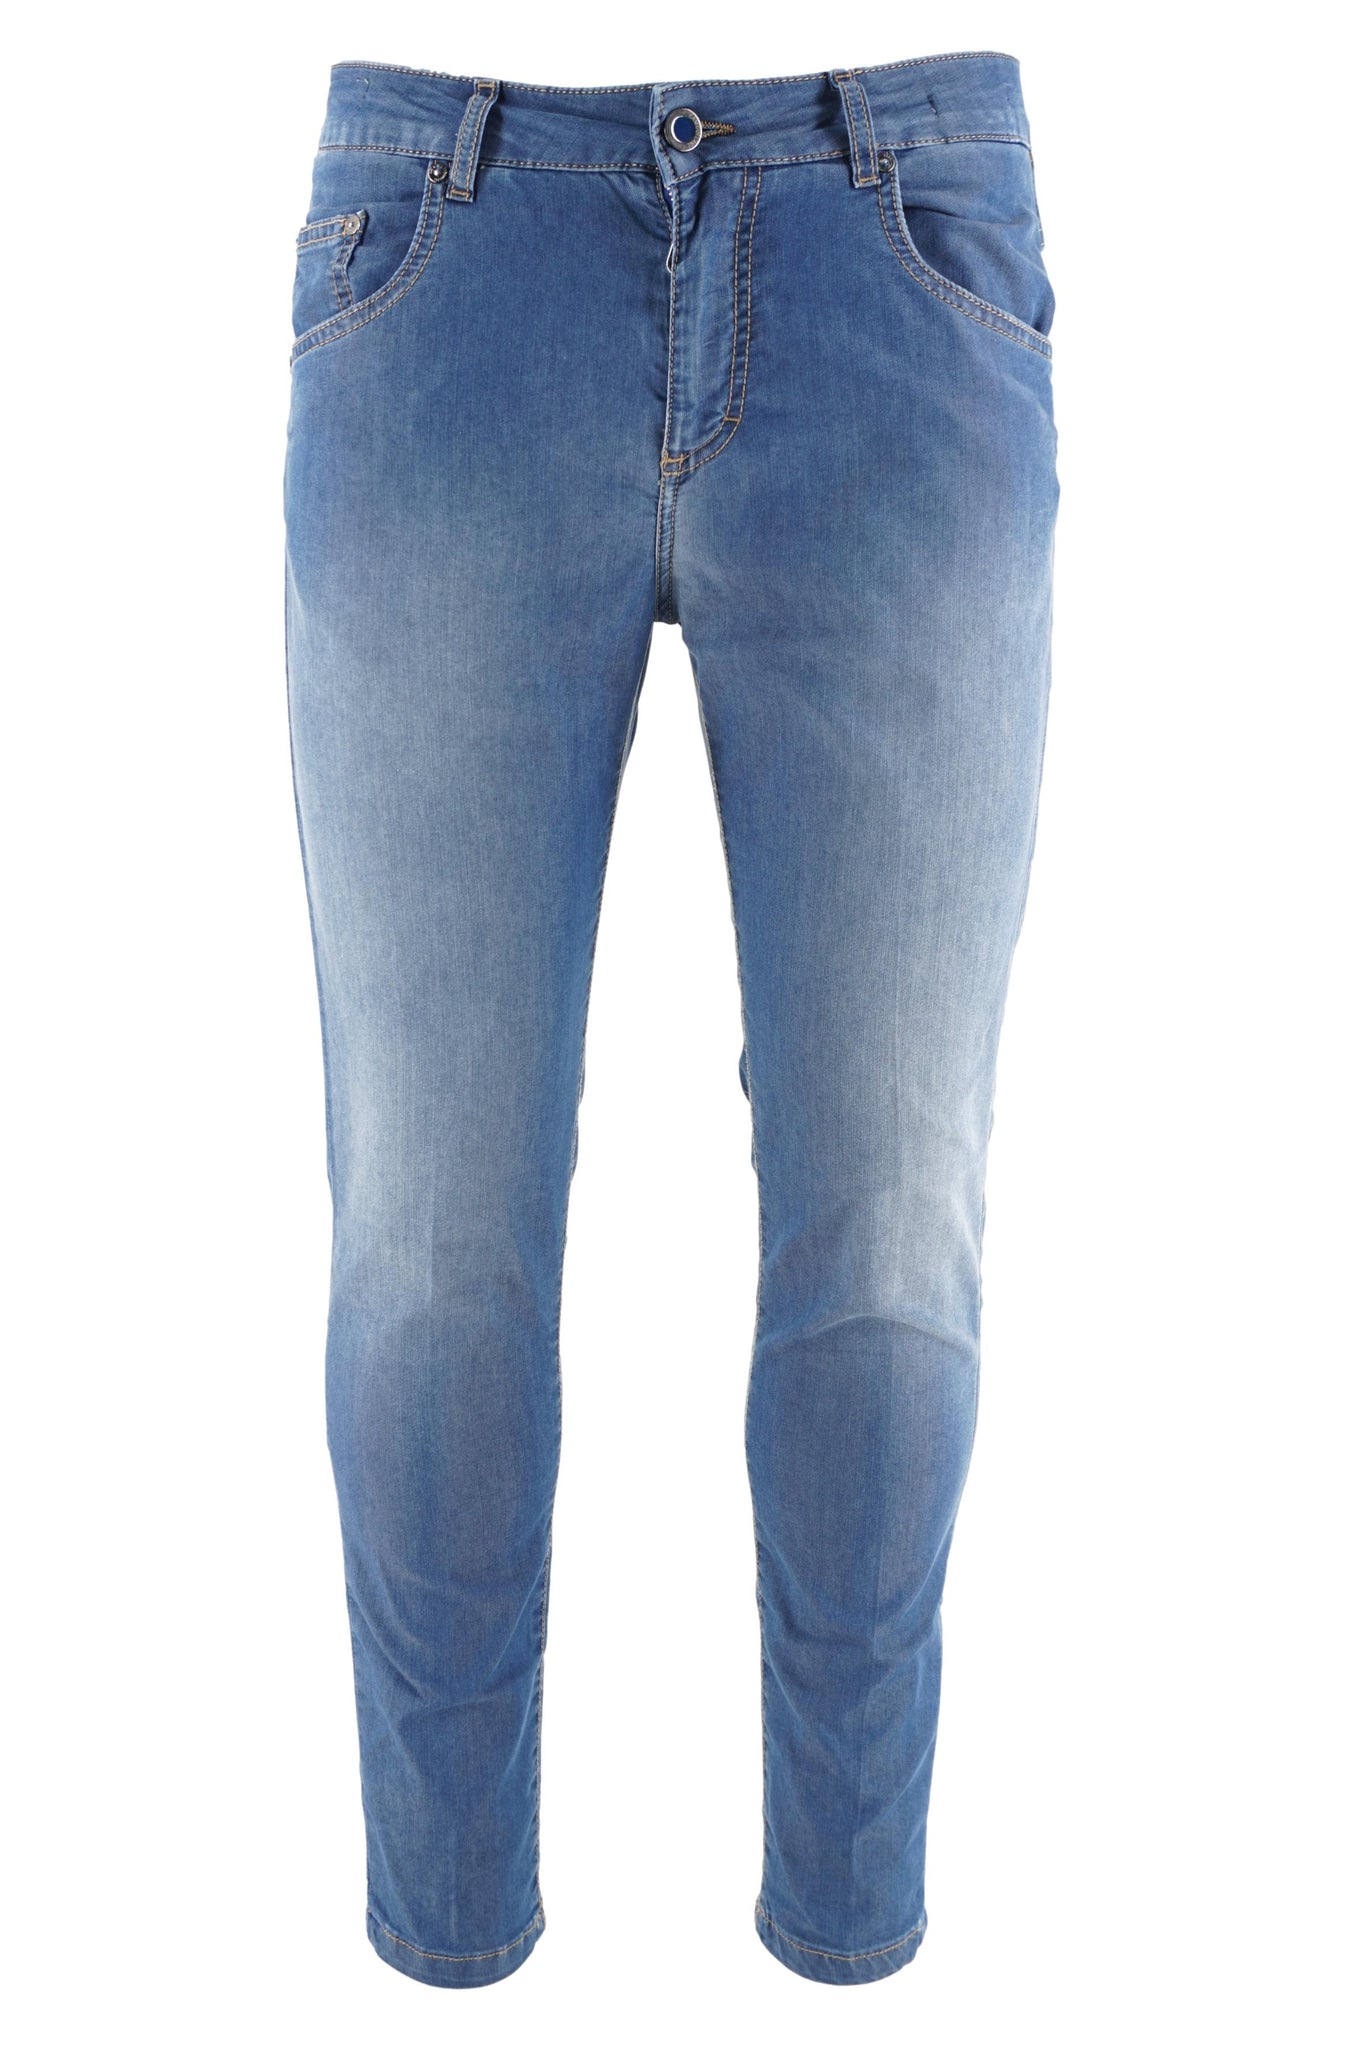 Jeans Leggero Modello Rocco Cinque Tasche / Jeans - Ideal Moda